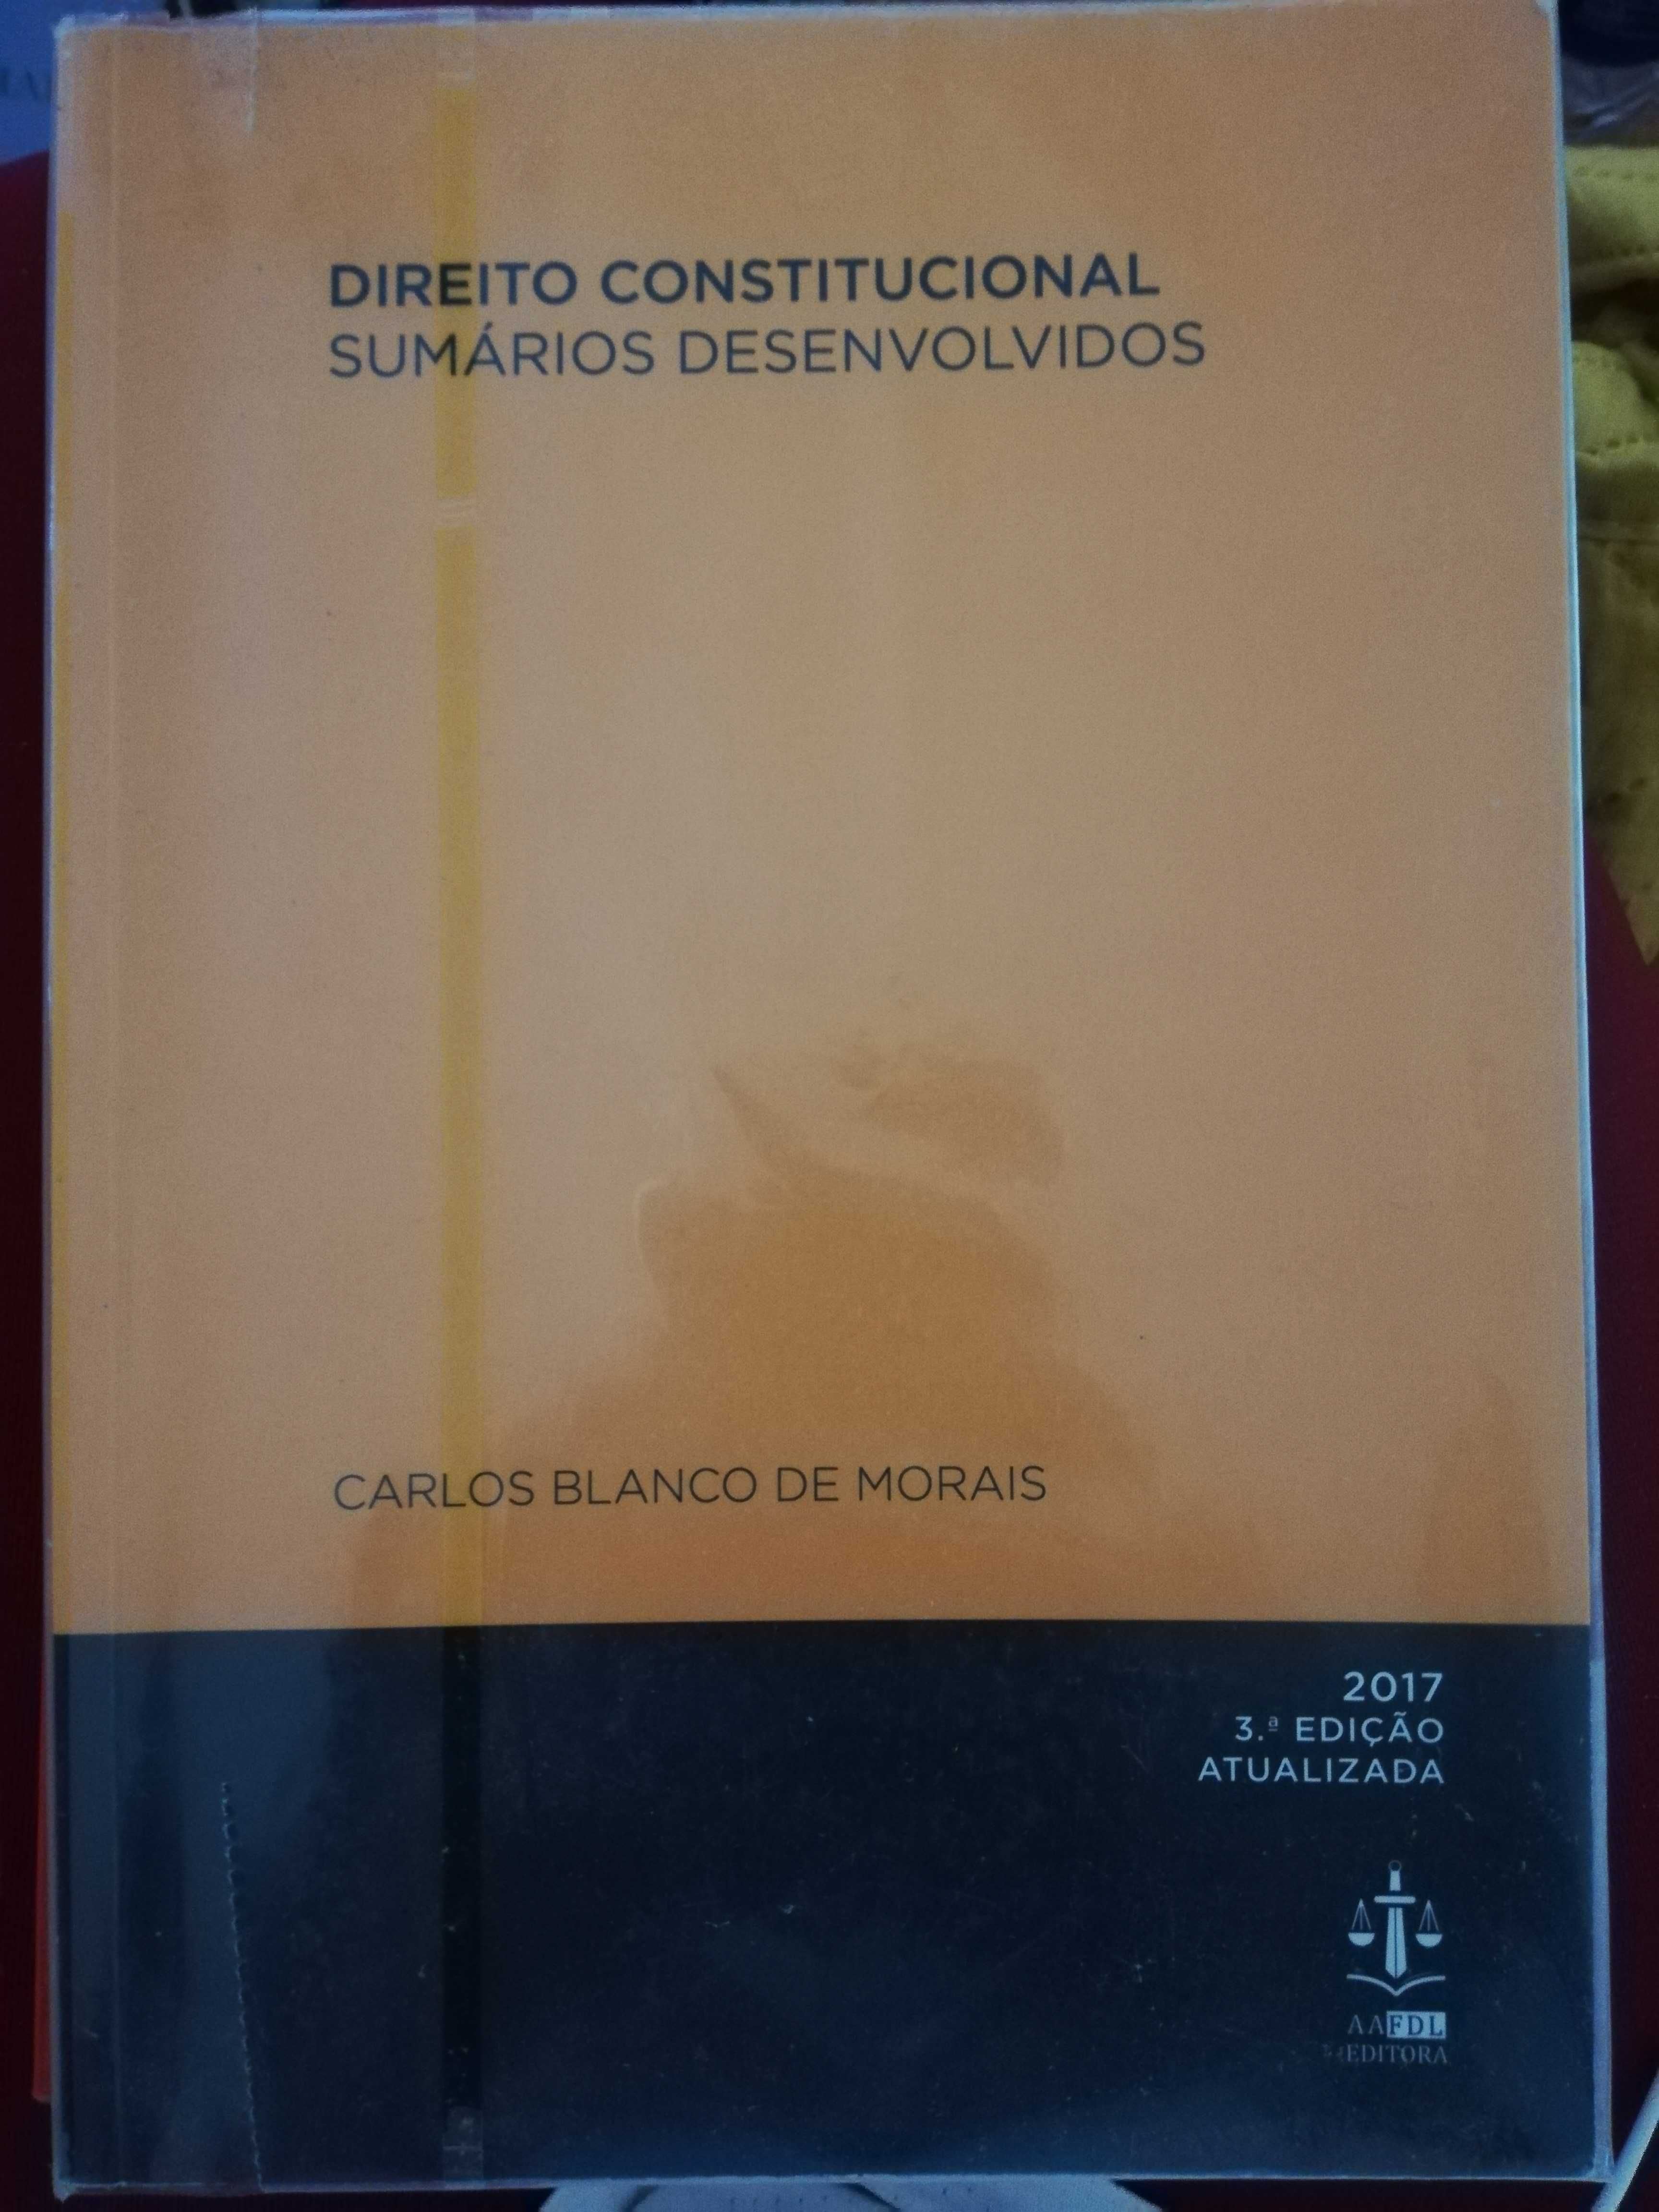 Sumários desenvolvidos, Carlos Blanco de Morais